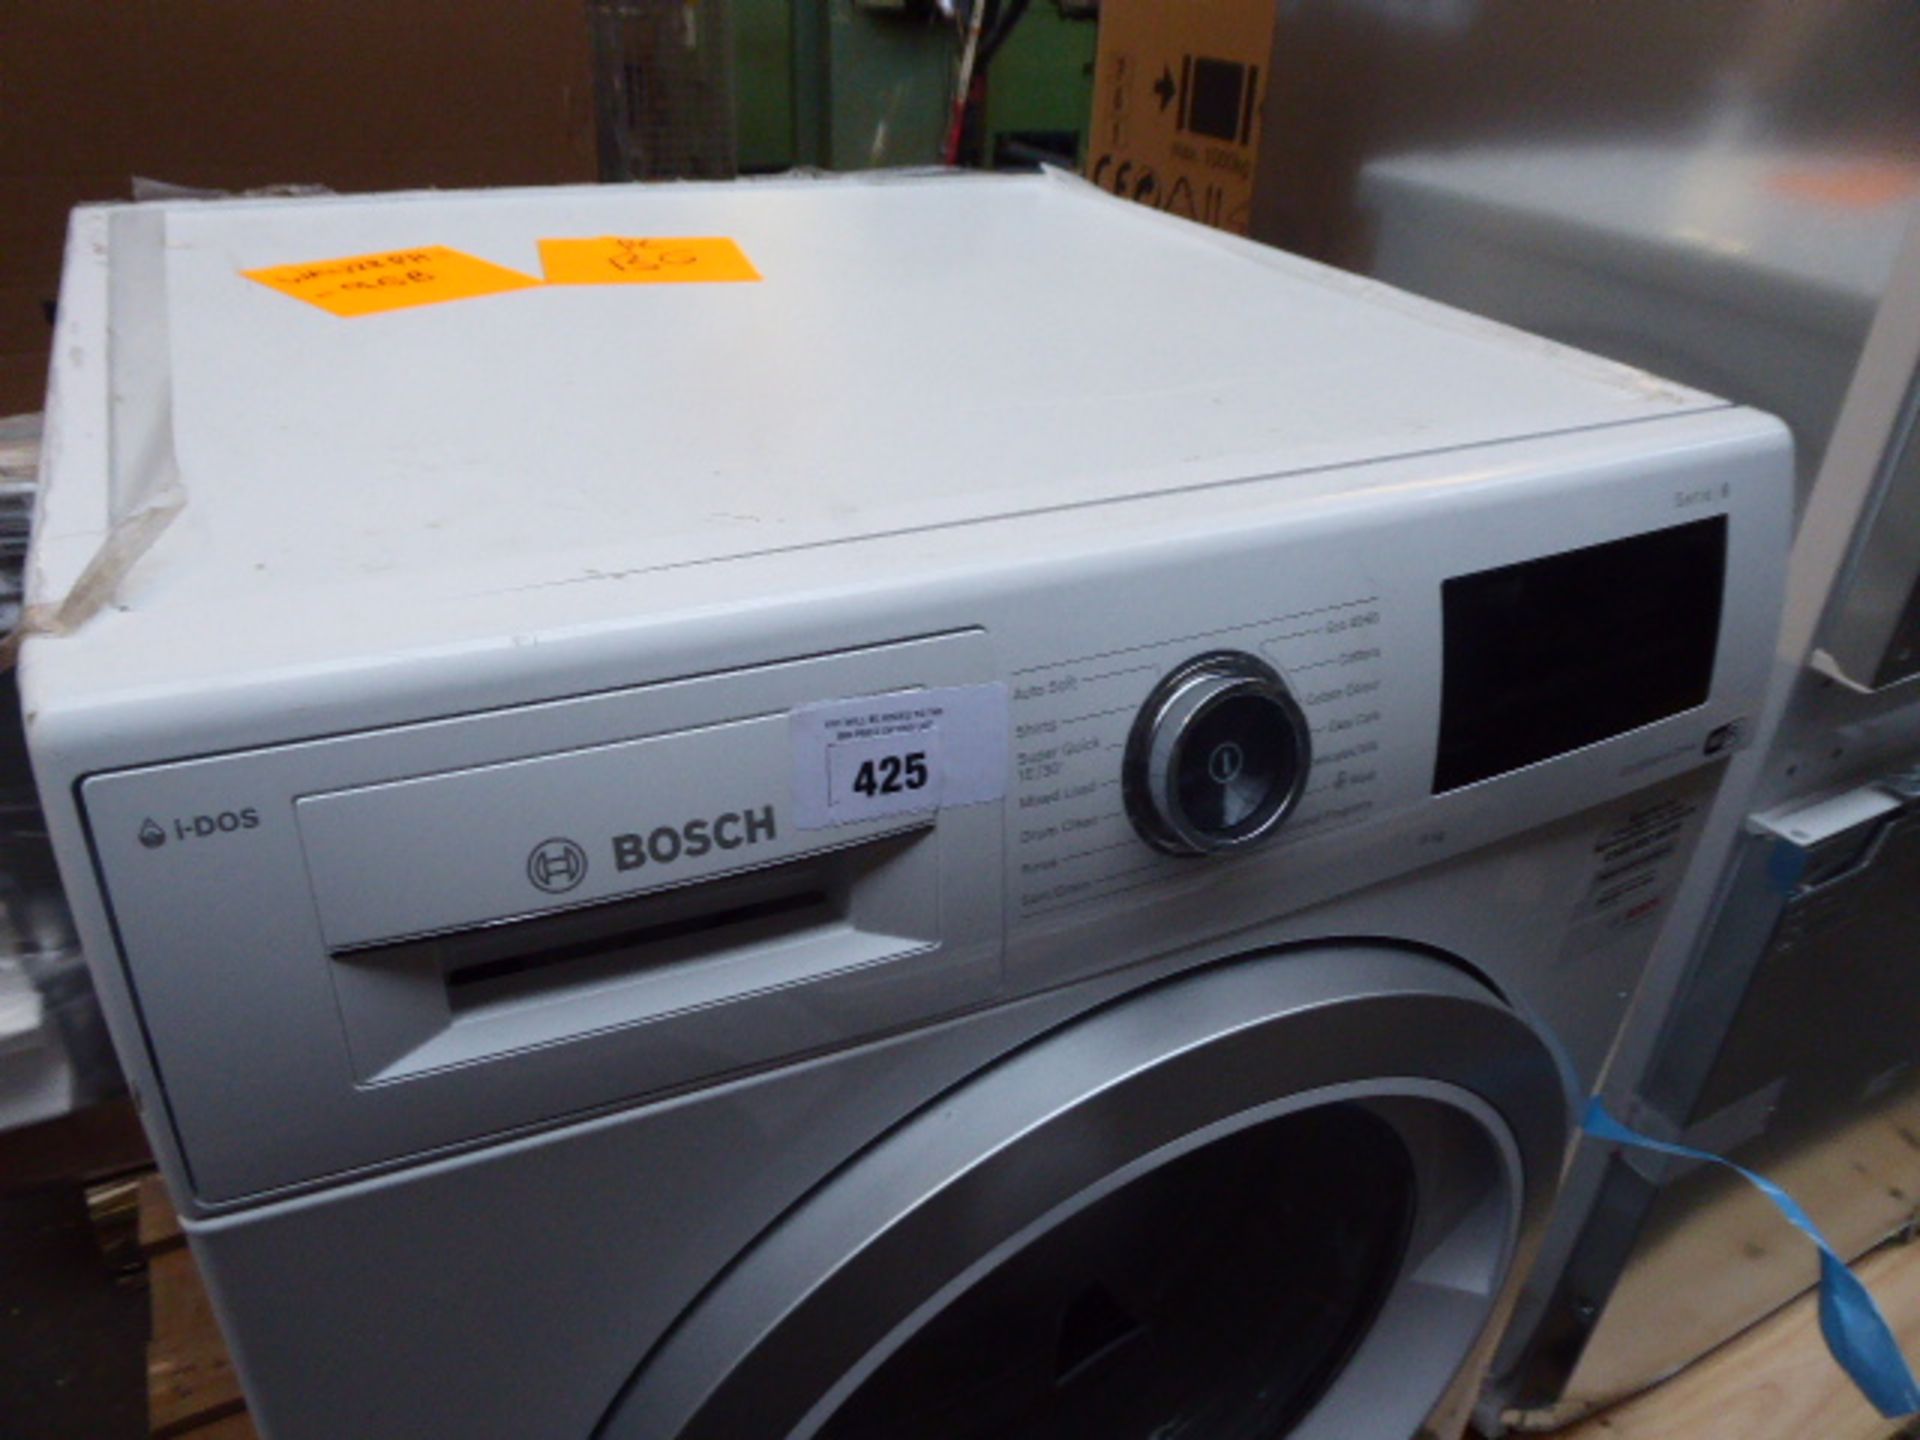 WAU28PH9GBB Bosch Washing machine - Image 3 of 3